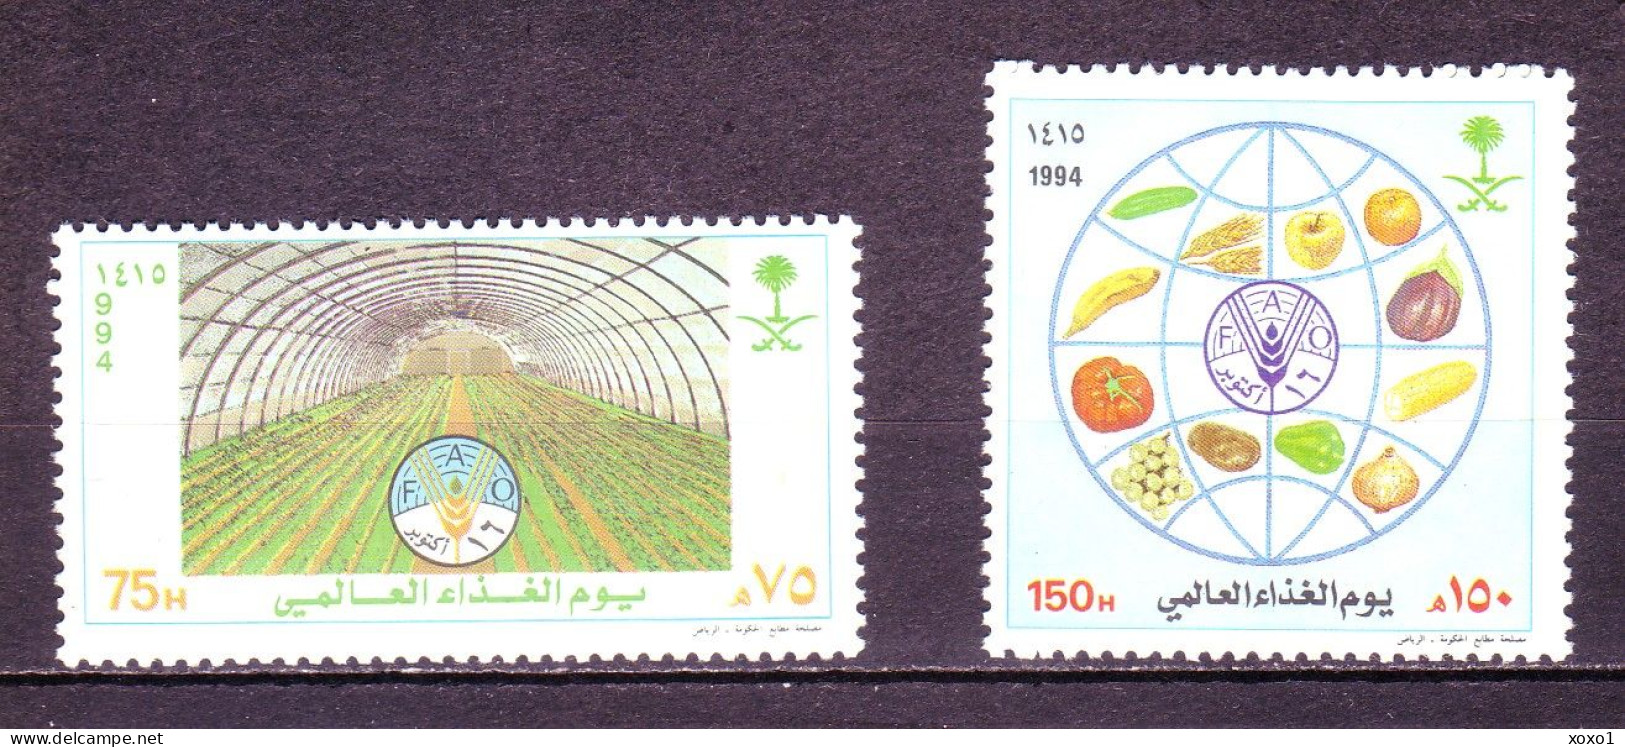 Saudi Arabia 1994 MiNr. 1201 - 1202 Saudi-Arabien Food Vegetables Cereals Fruits FAO Emblem 2v MNH** 4,60 € - Arabie Saoudite